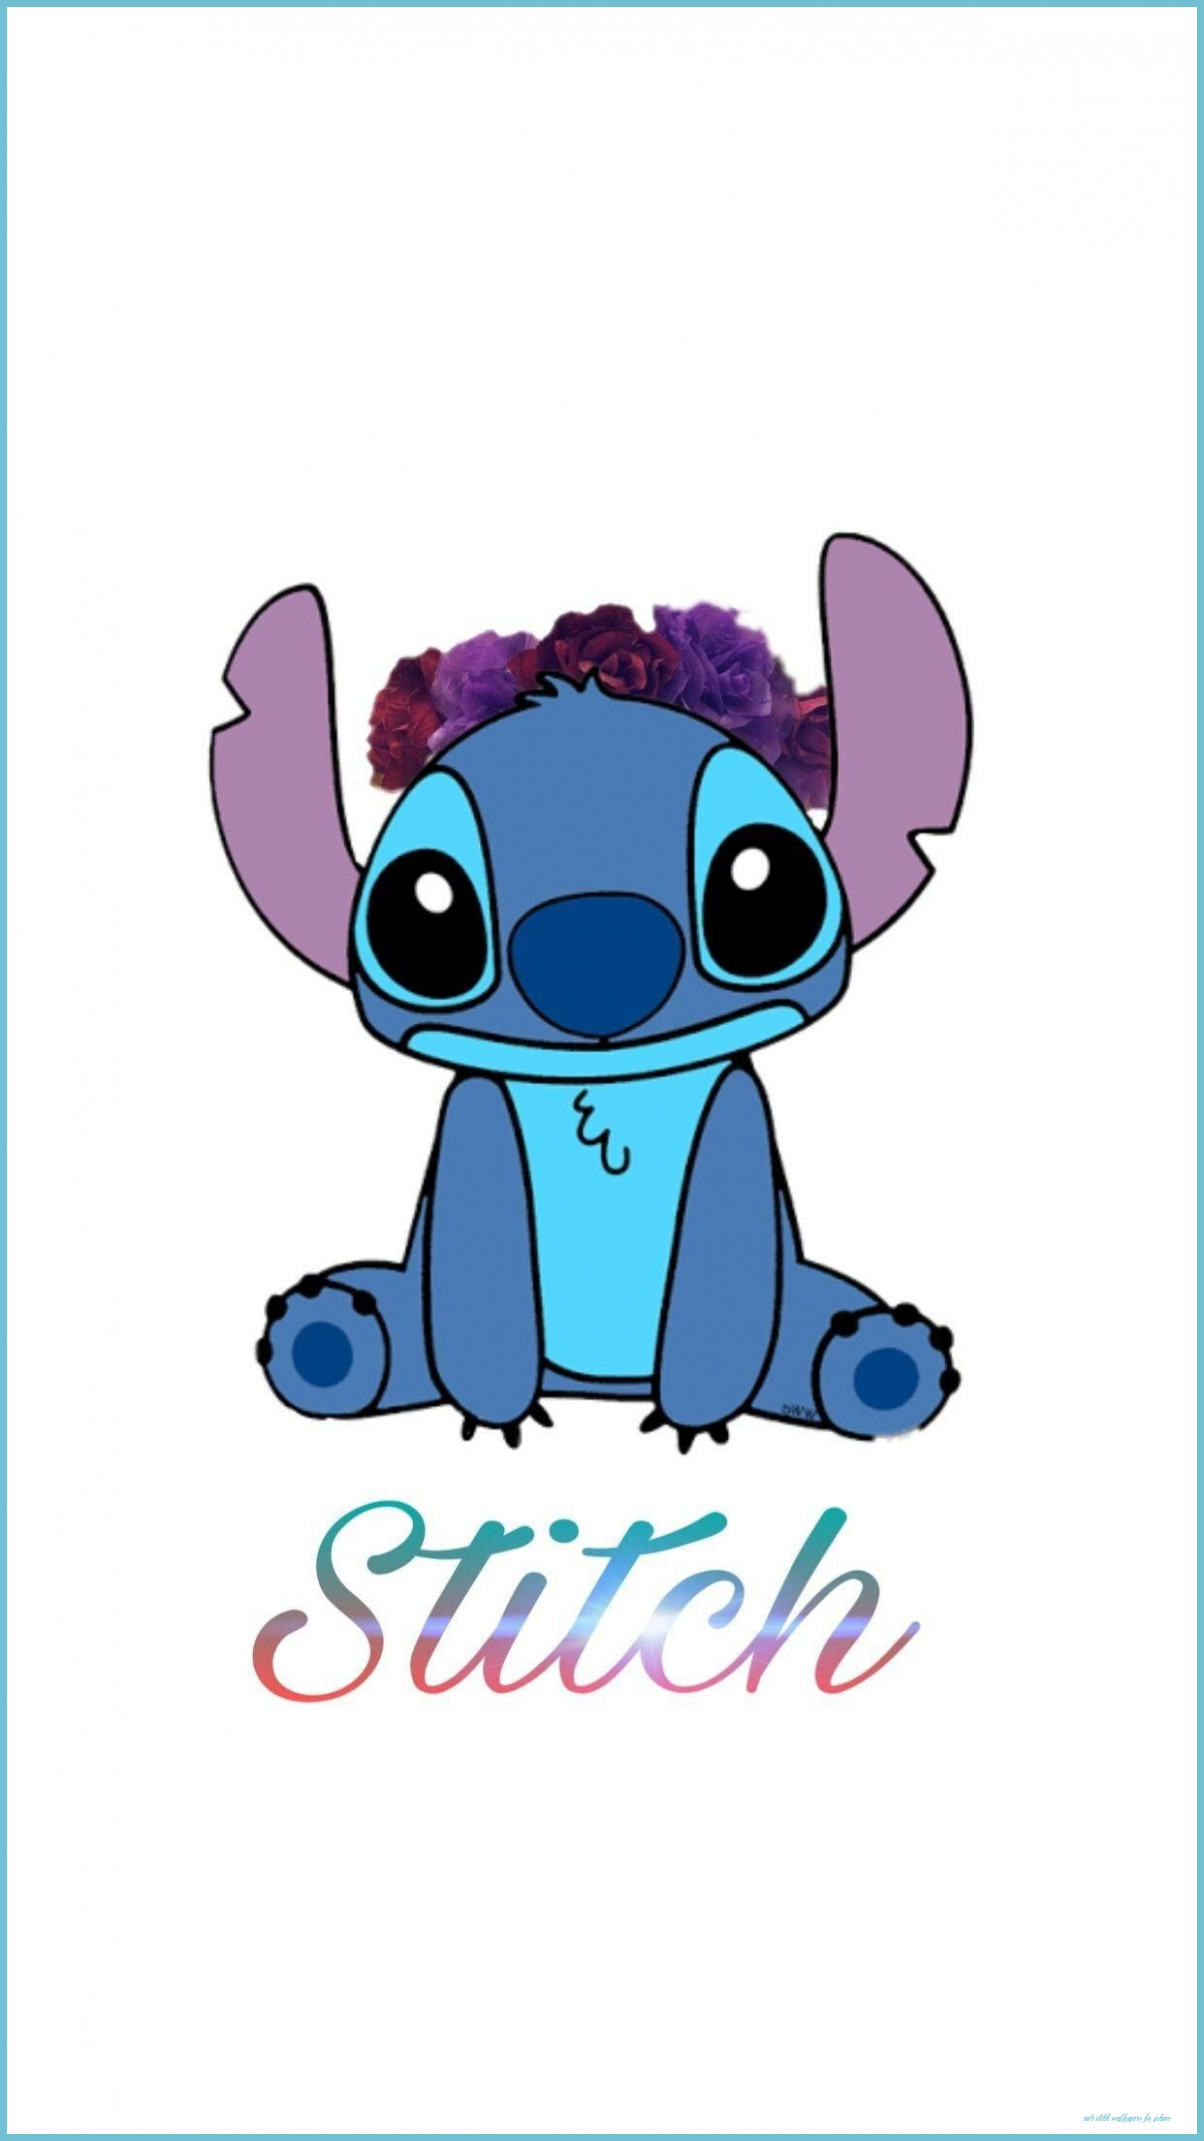 Cute Stitch iPhone Wallpaper Stitch Drawing, Cute Stitch Wallpaper For iPhone